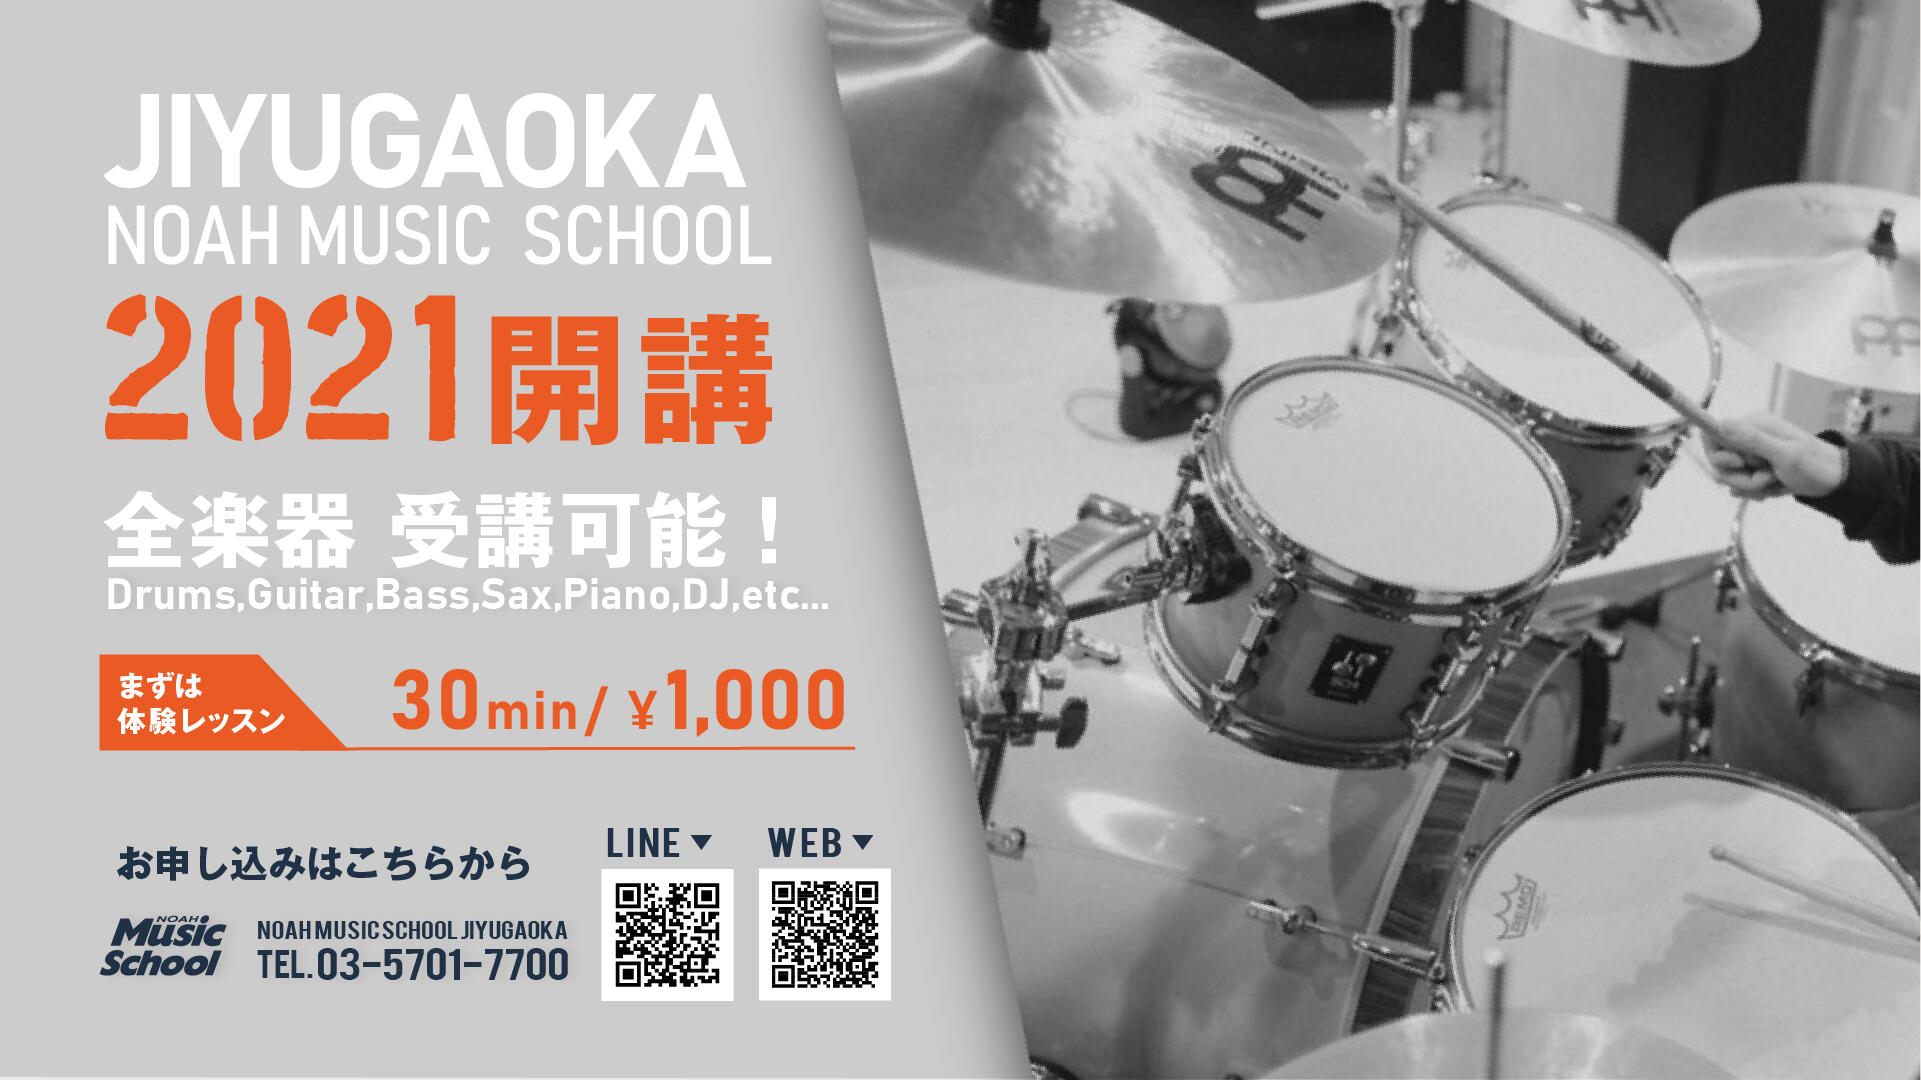 211001_jiyugaoka_mschool_open.jpg